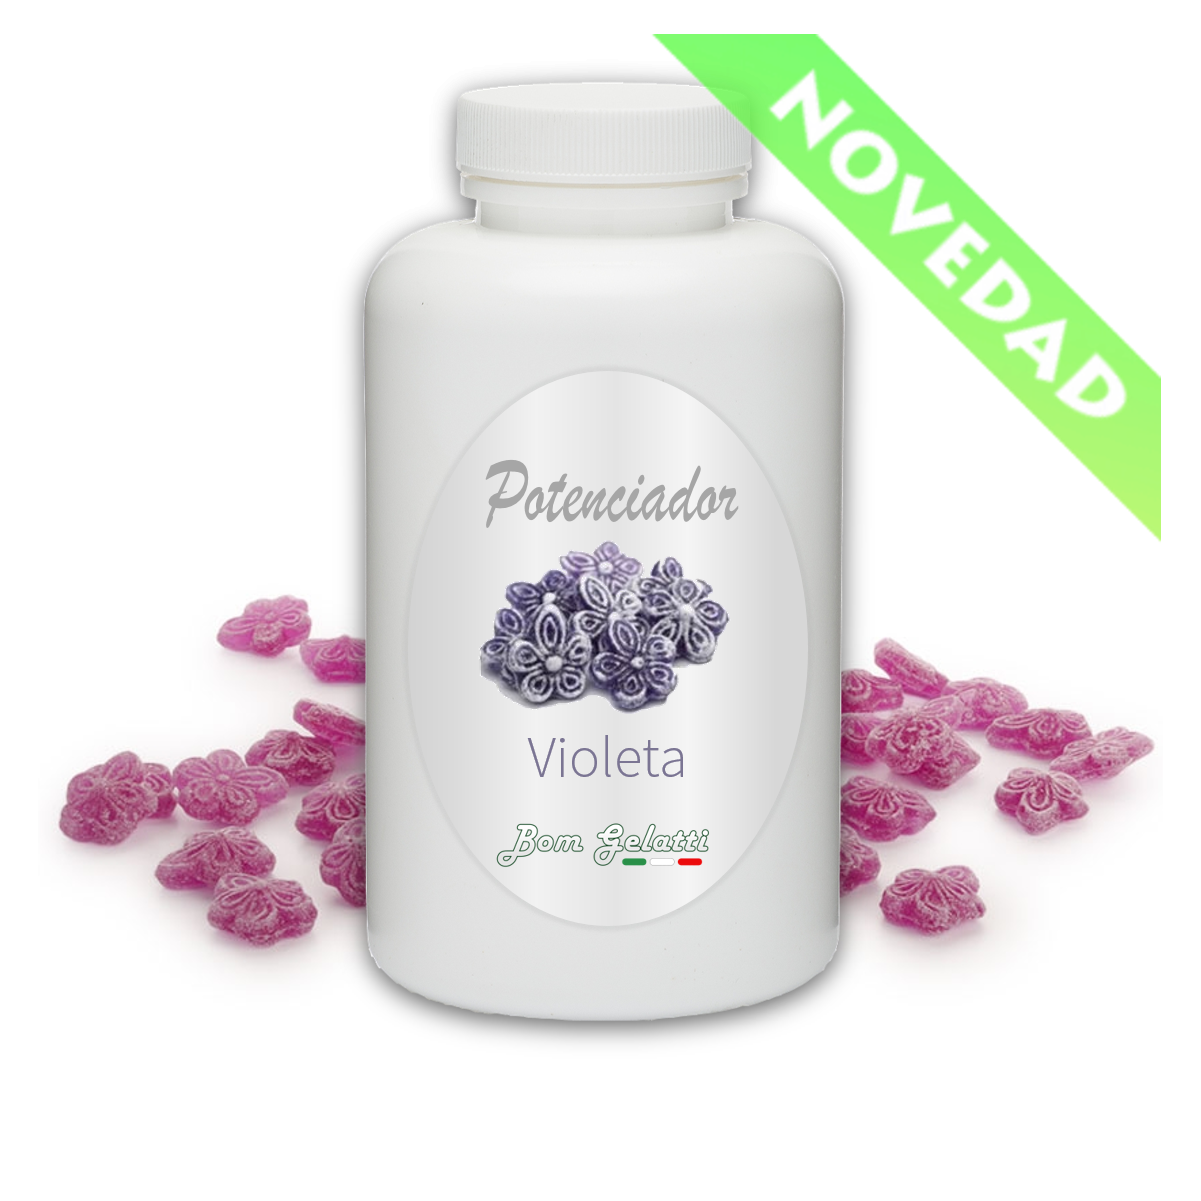 Potenciador pasta aroma Violeta